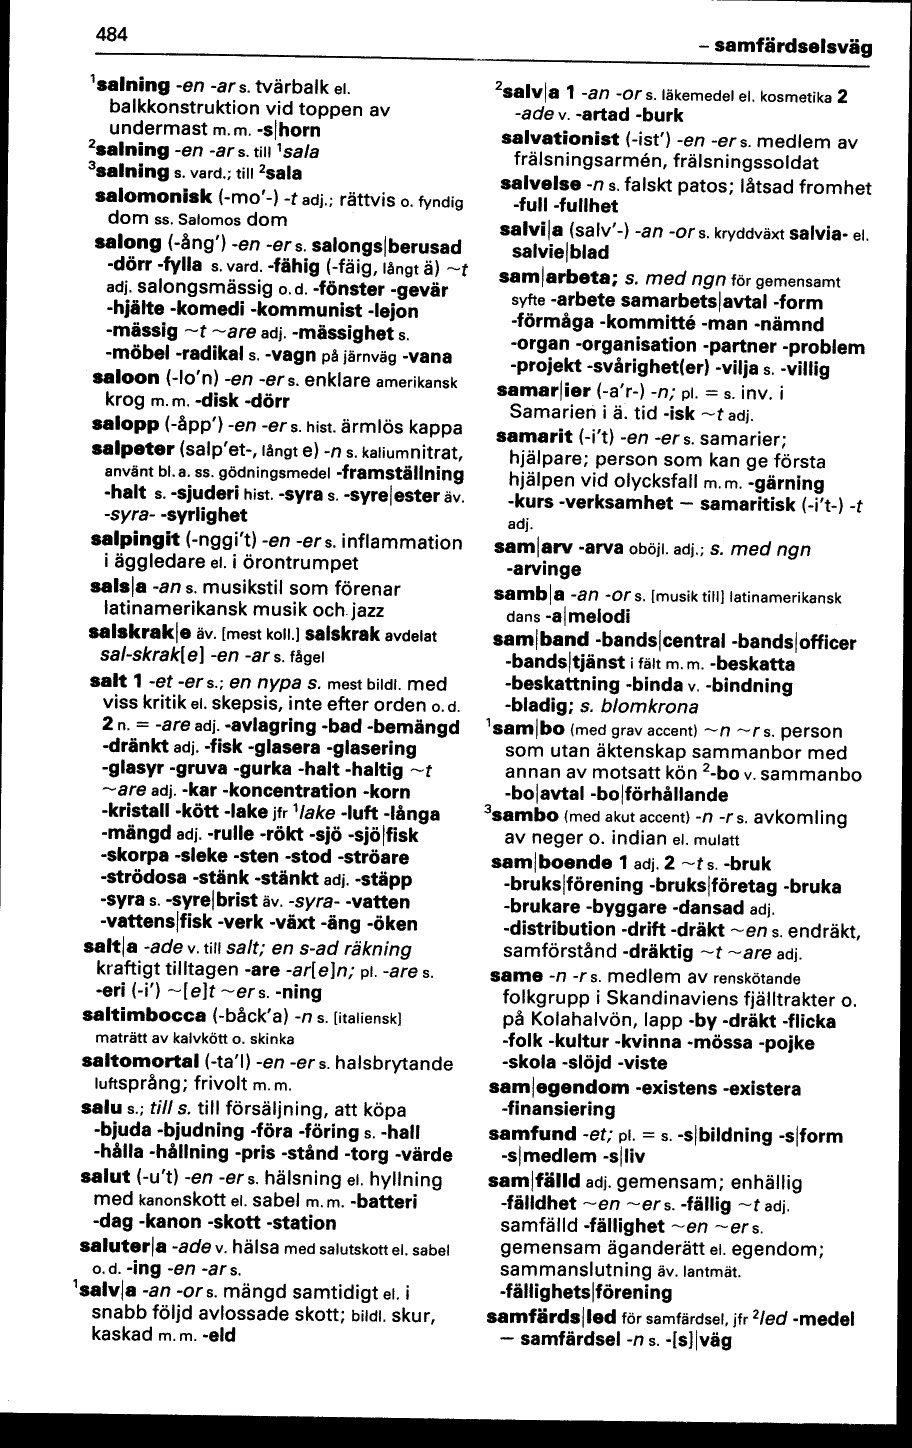 484 (Svenska Akademiens ordlista / Elfte upplagan, sjätte tryckningen  (1991))